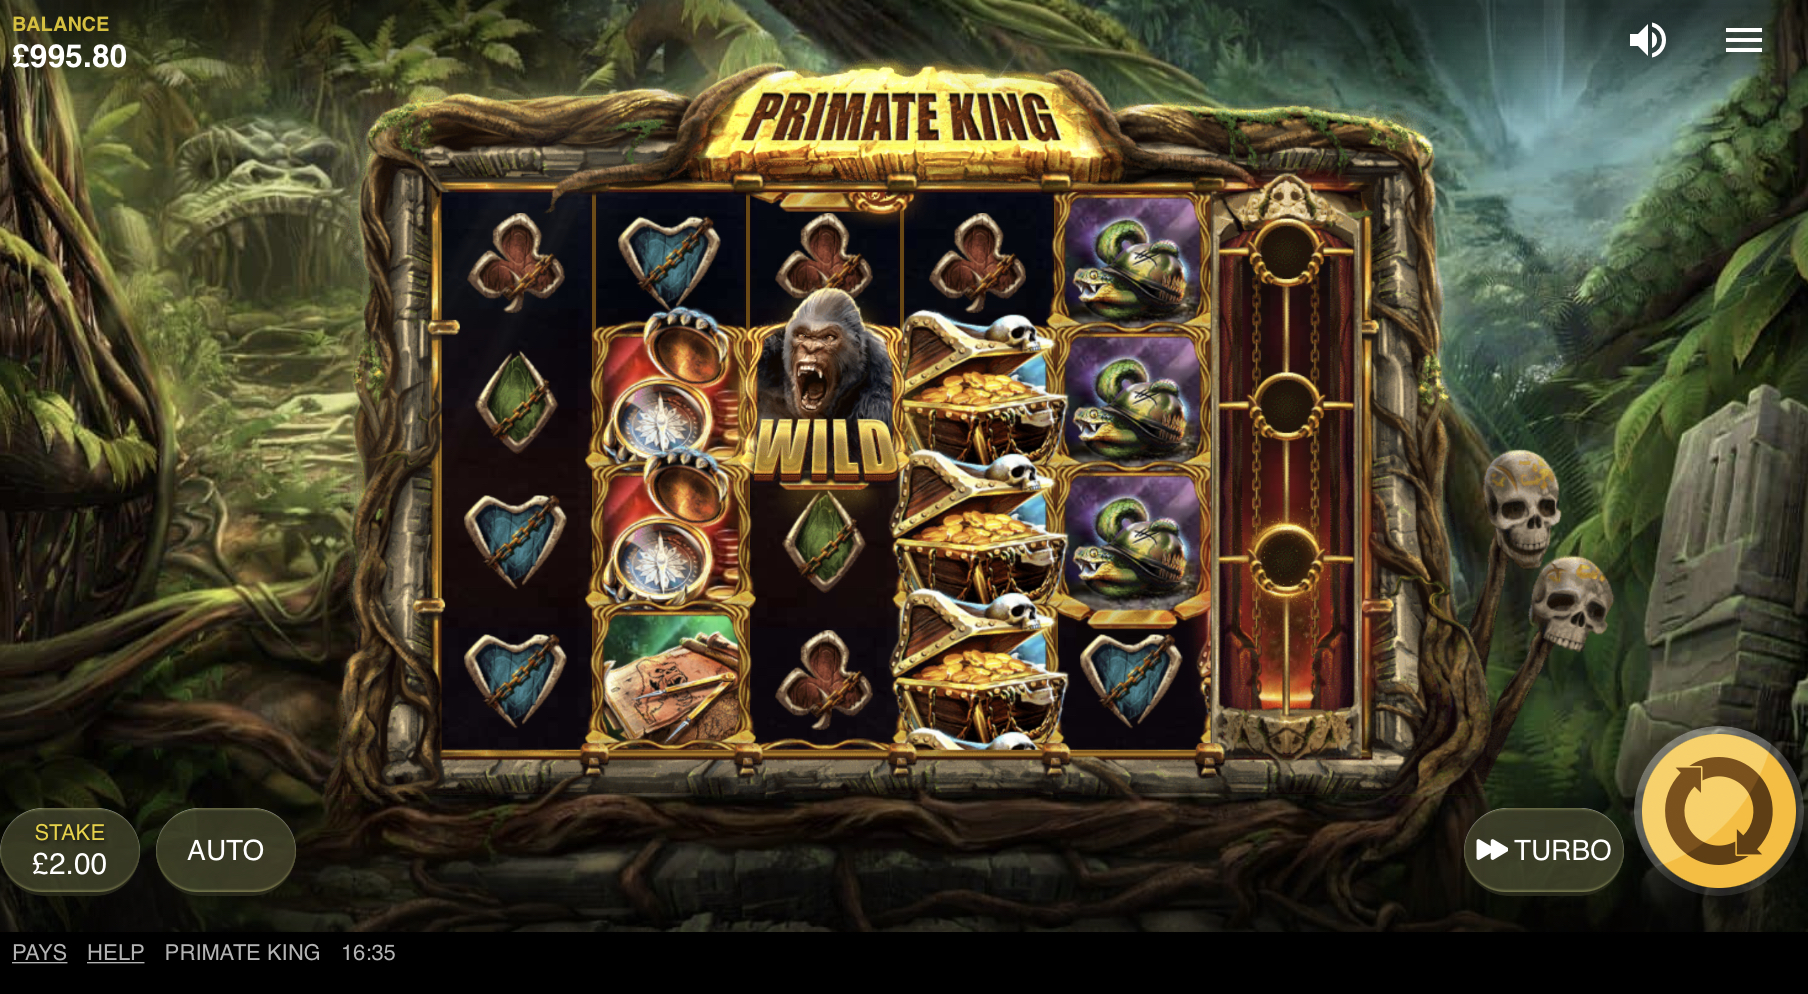 เล่นเกมสล็อตออนไลน์ Primate King กราฟฟิกสมจริง สีแจ่ม